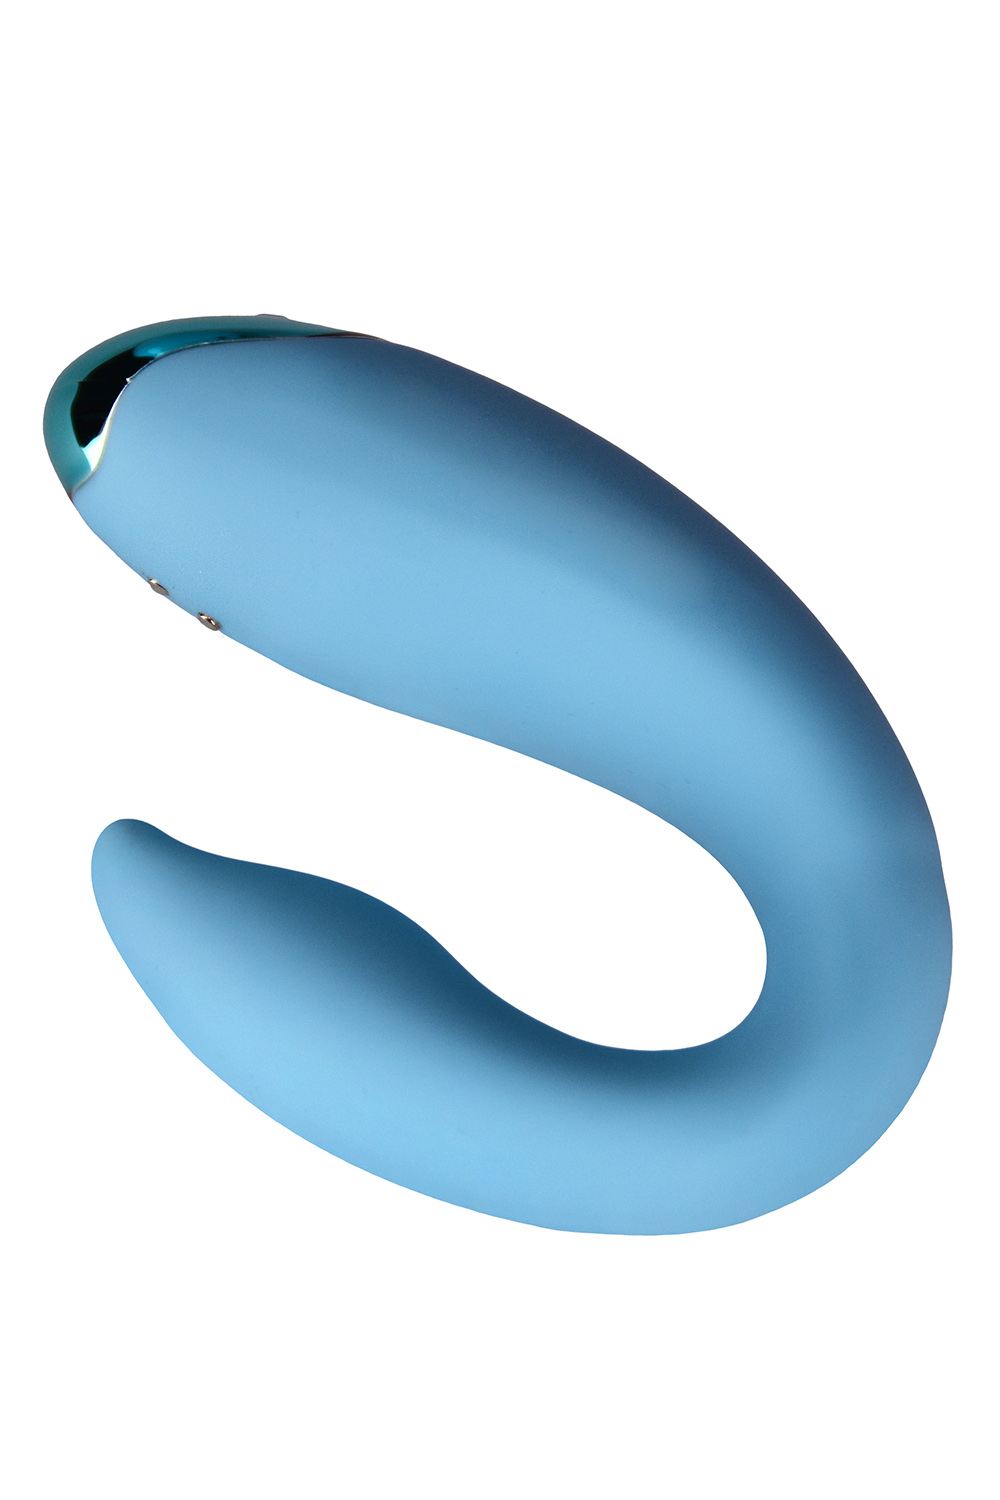 FairyGasm F0001 PleasureBerry Akcesoria erotyczne wibrator, blue